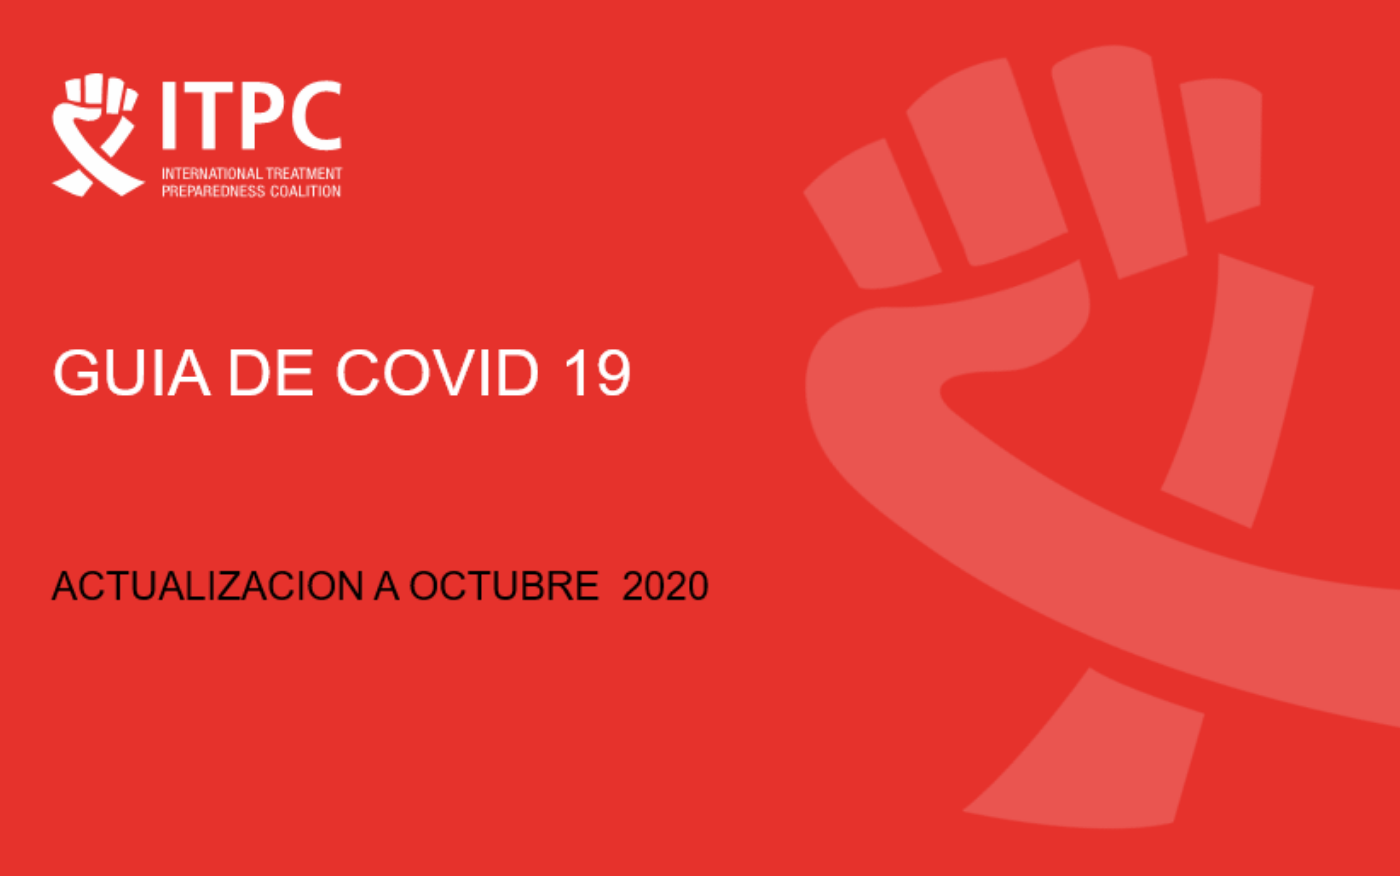 ITPC GUIA DE COVID 19